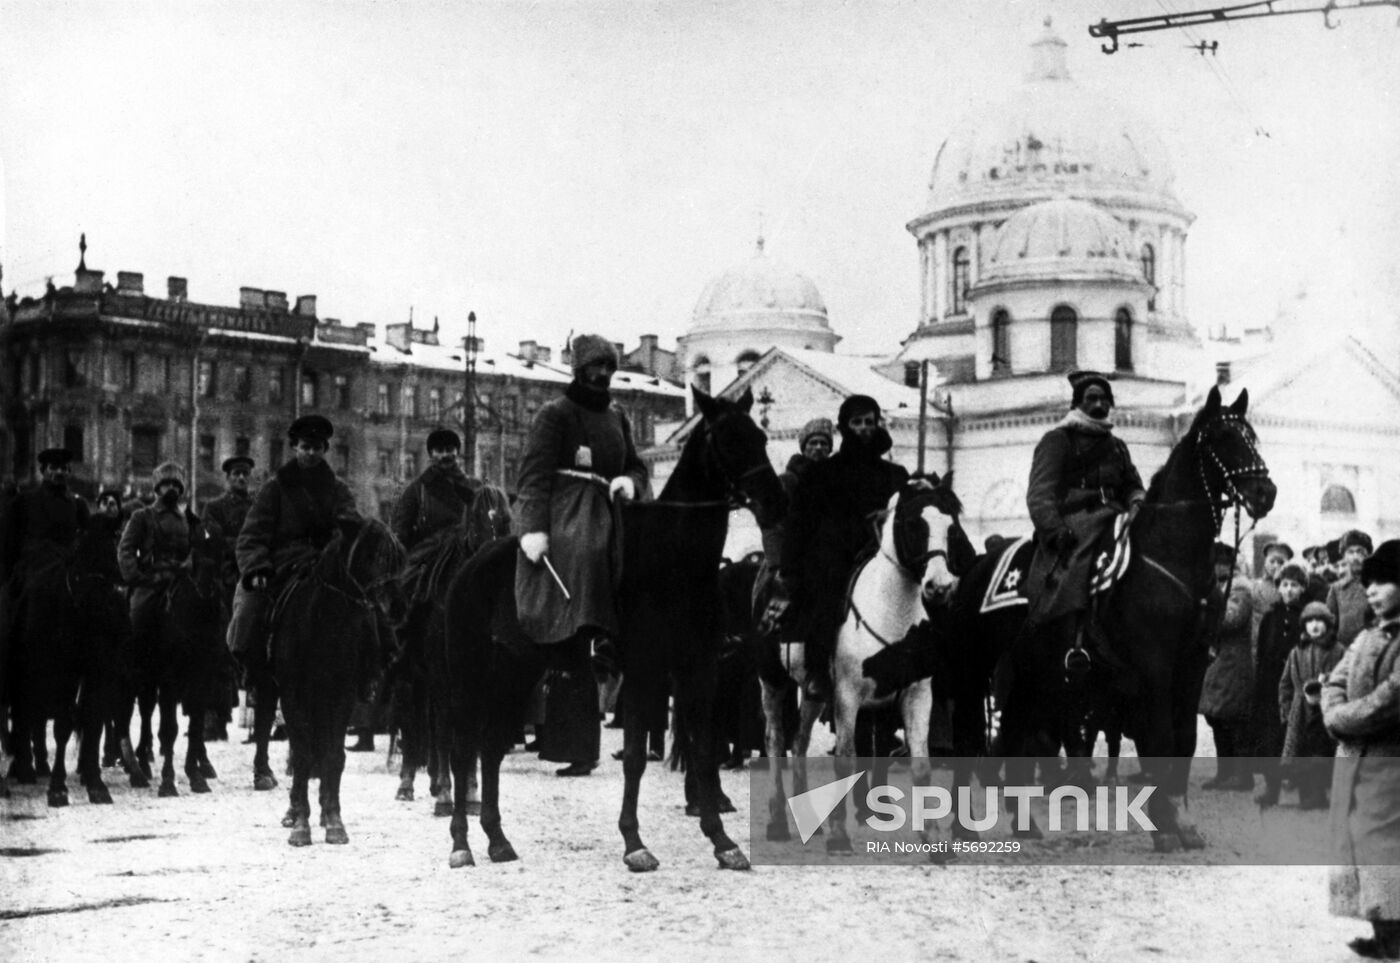 Civil War in Russia, 1917-1922